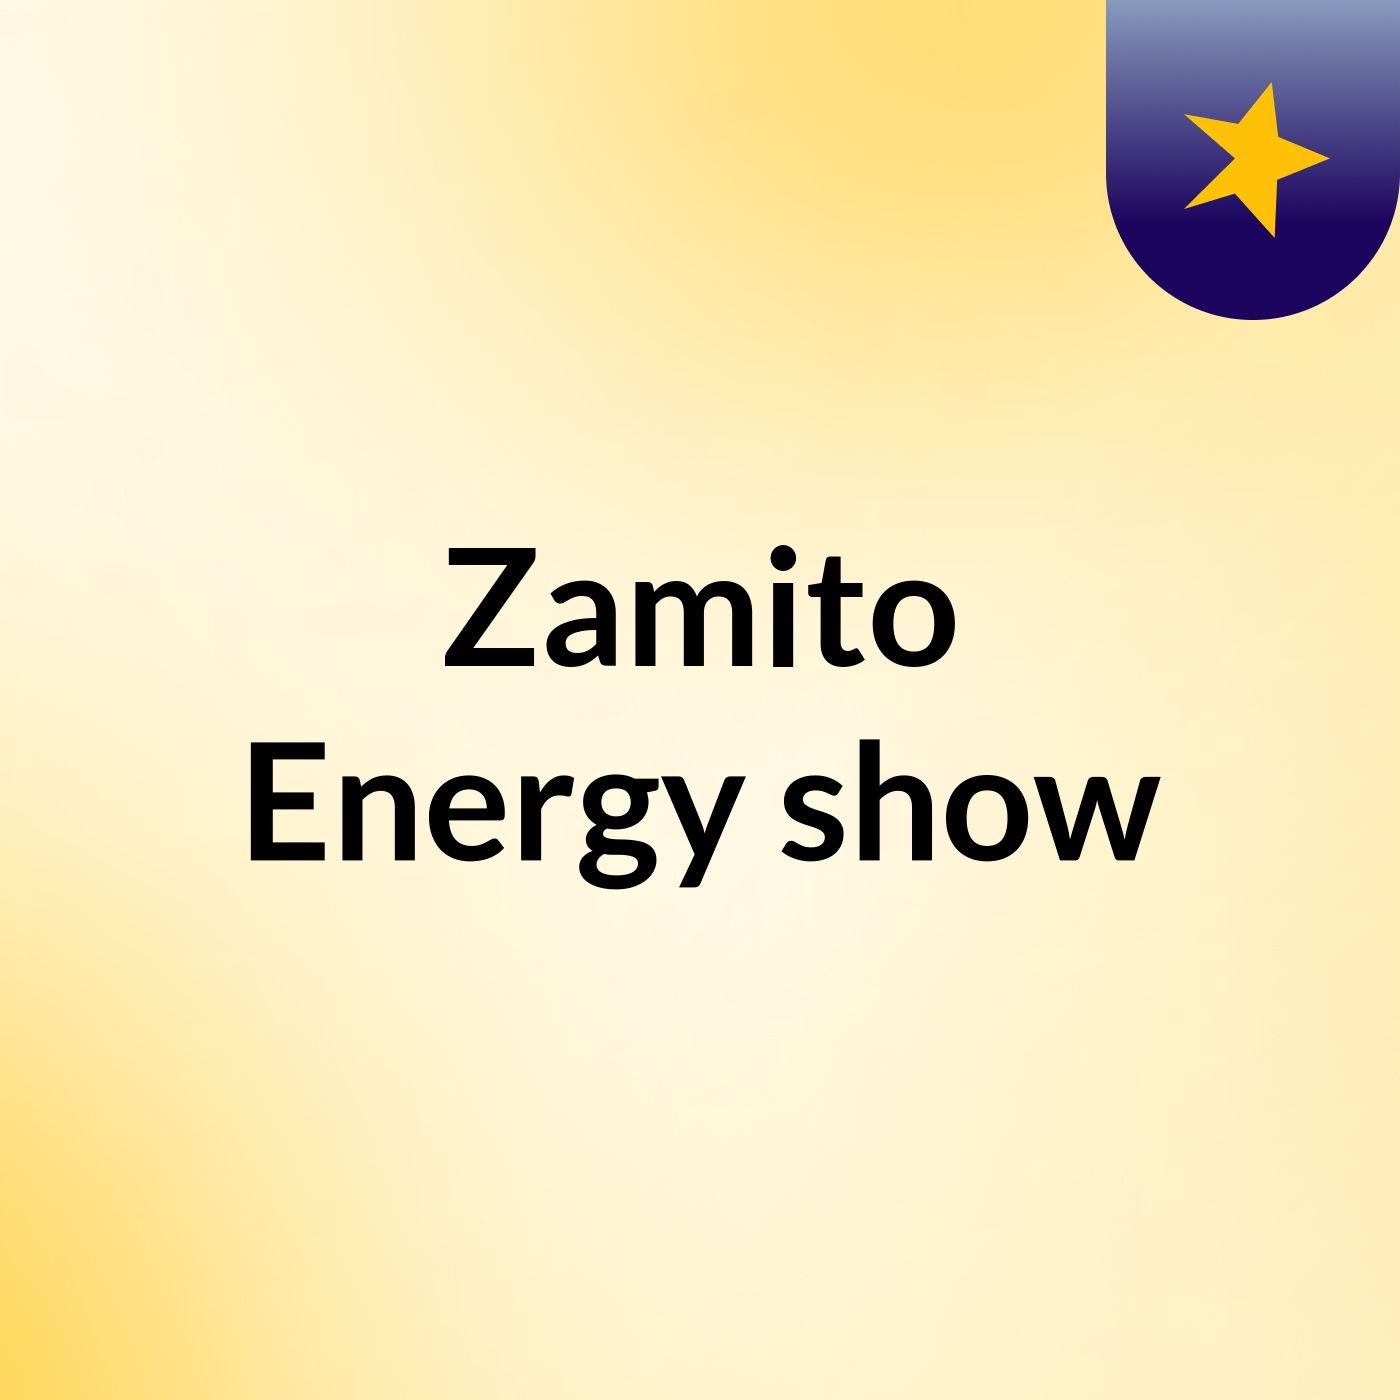 Zamito Energy show